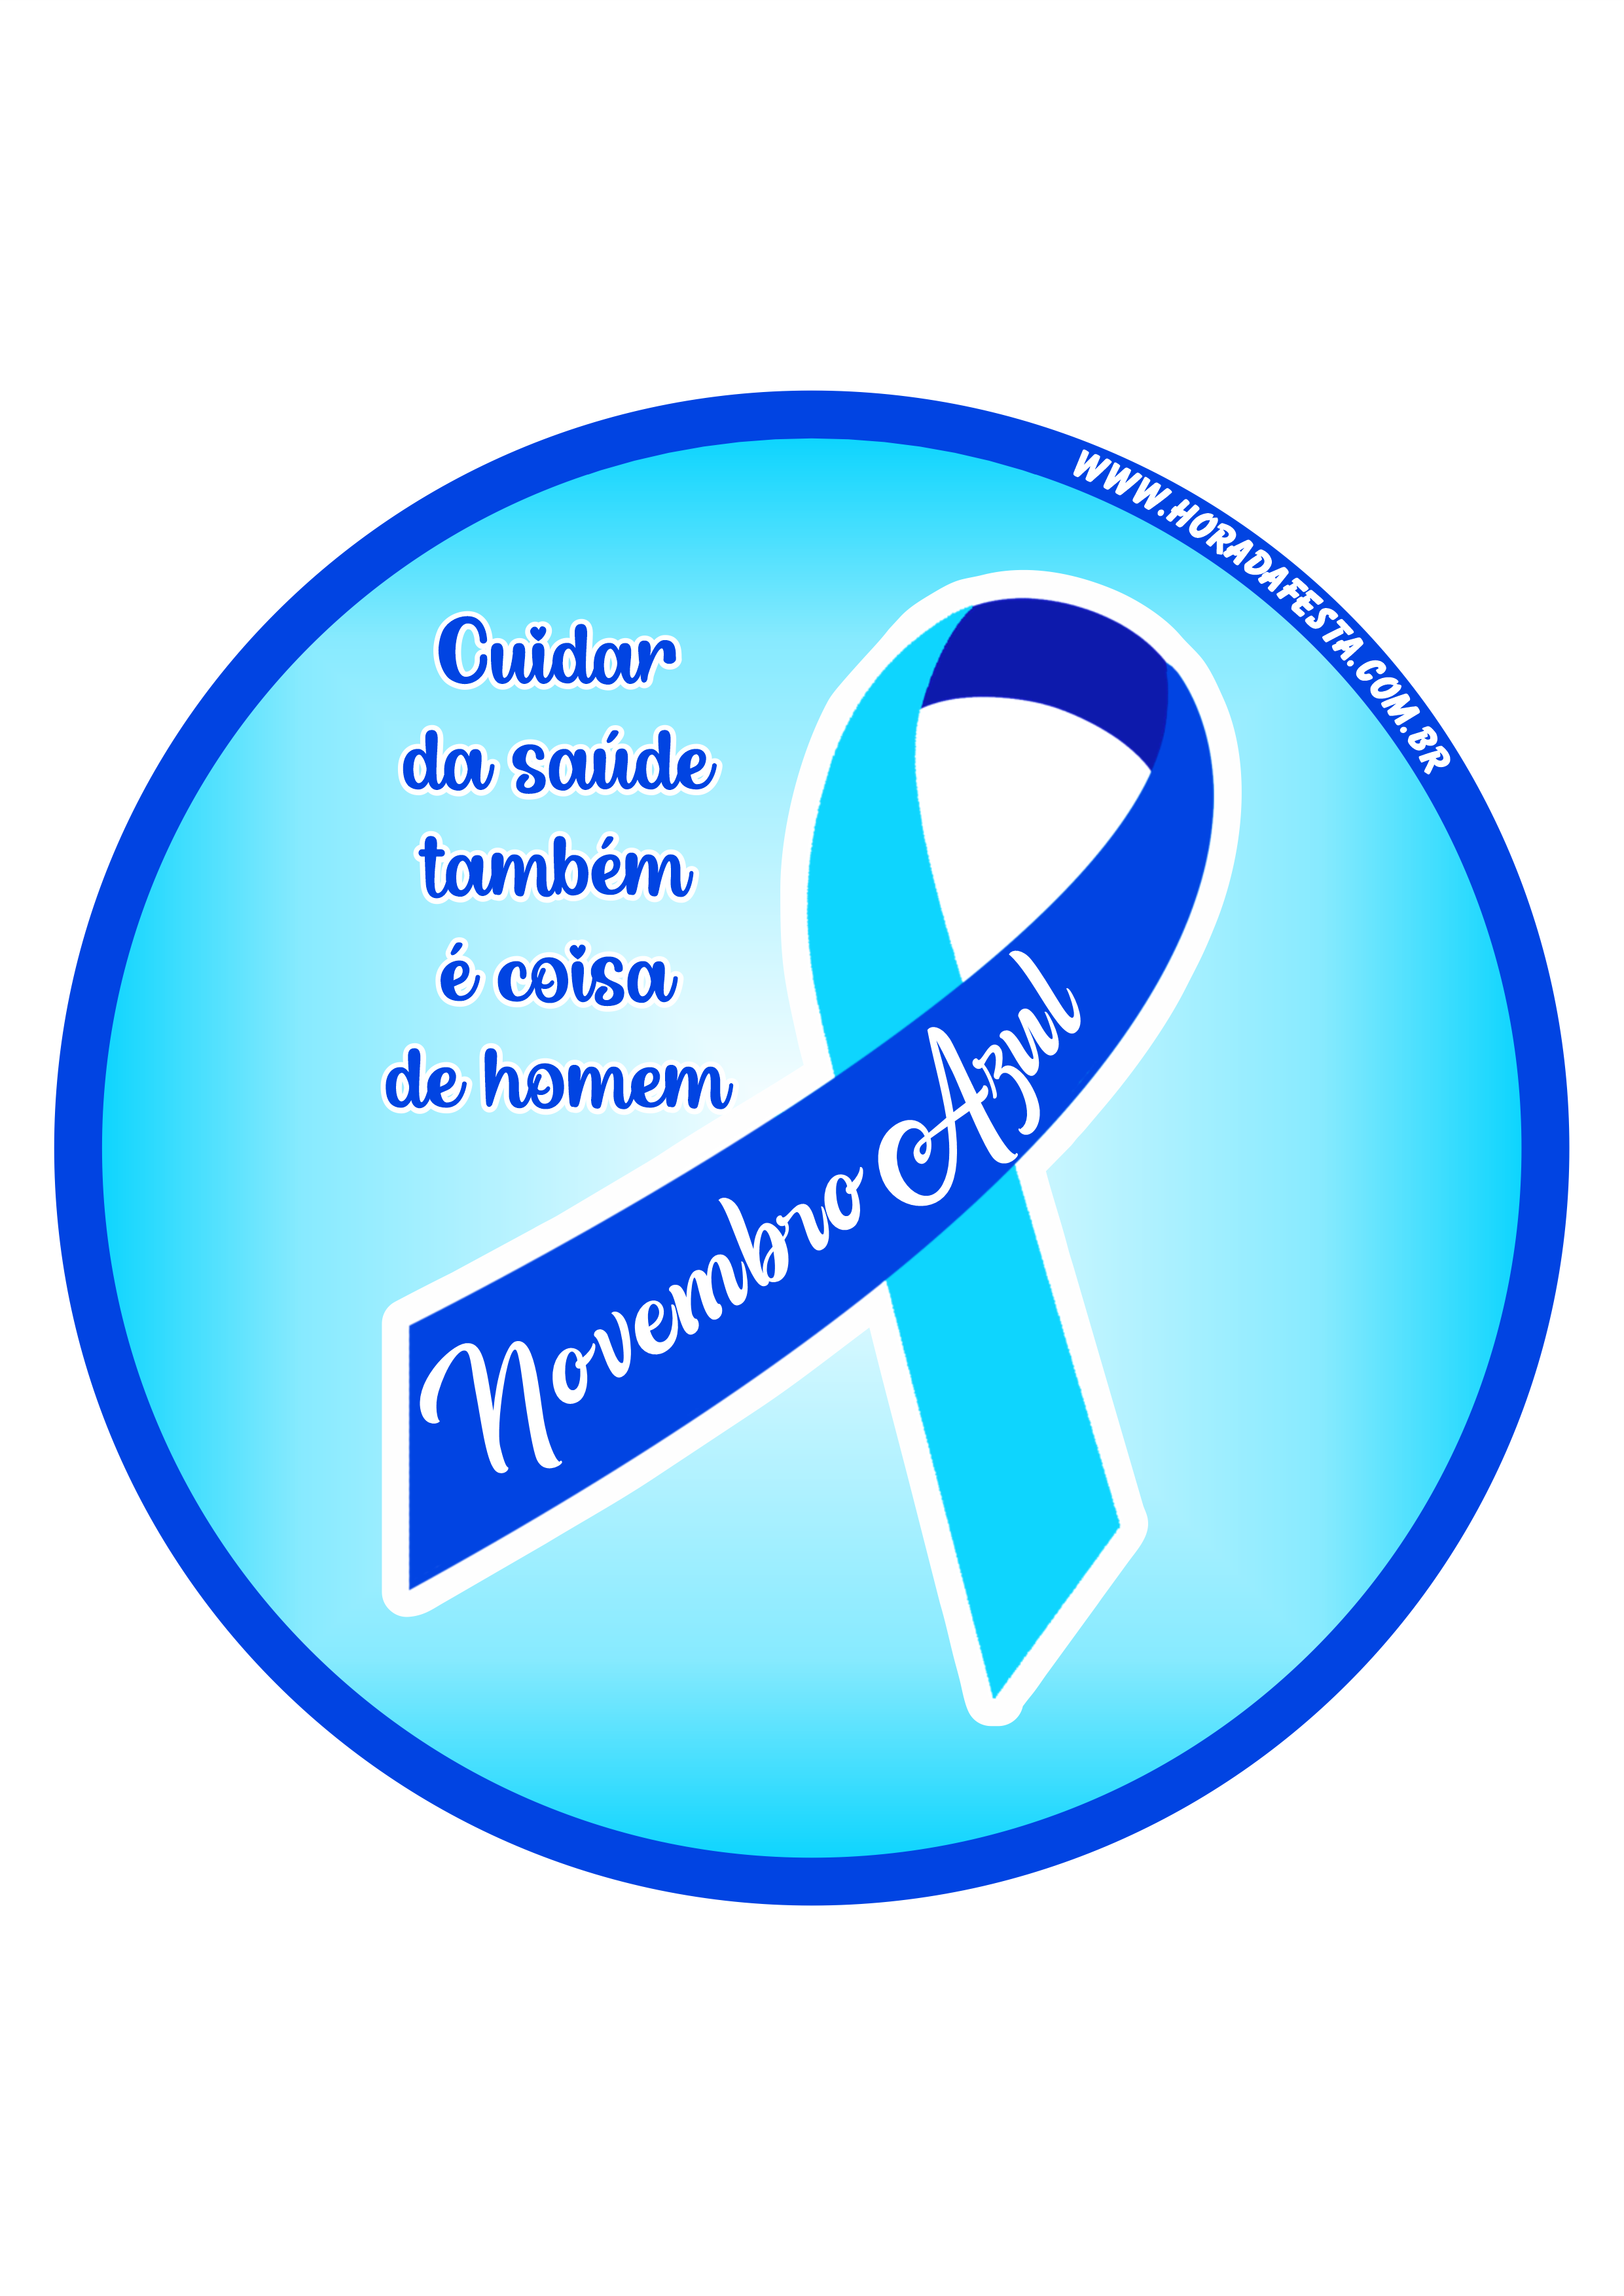 Novembro Azul mês de prevenção ao câncer de próstata cuidar da saúde também é coisa de homem adesivo tag sticker painel redondo png